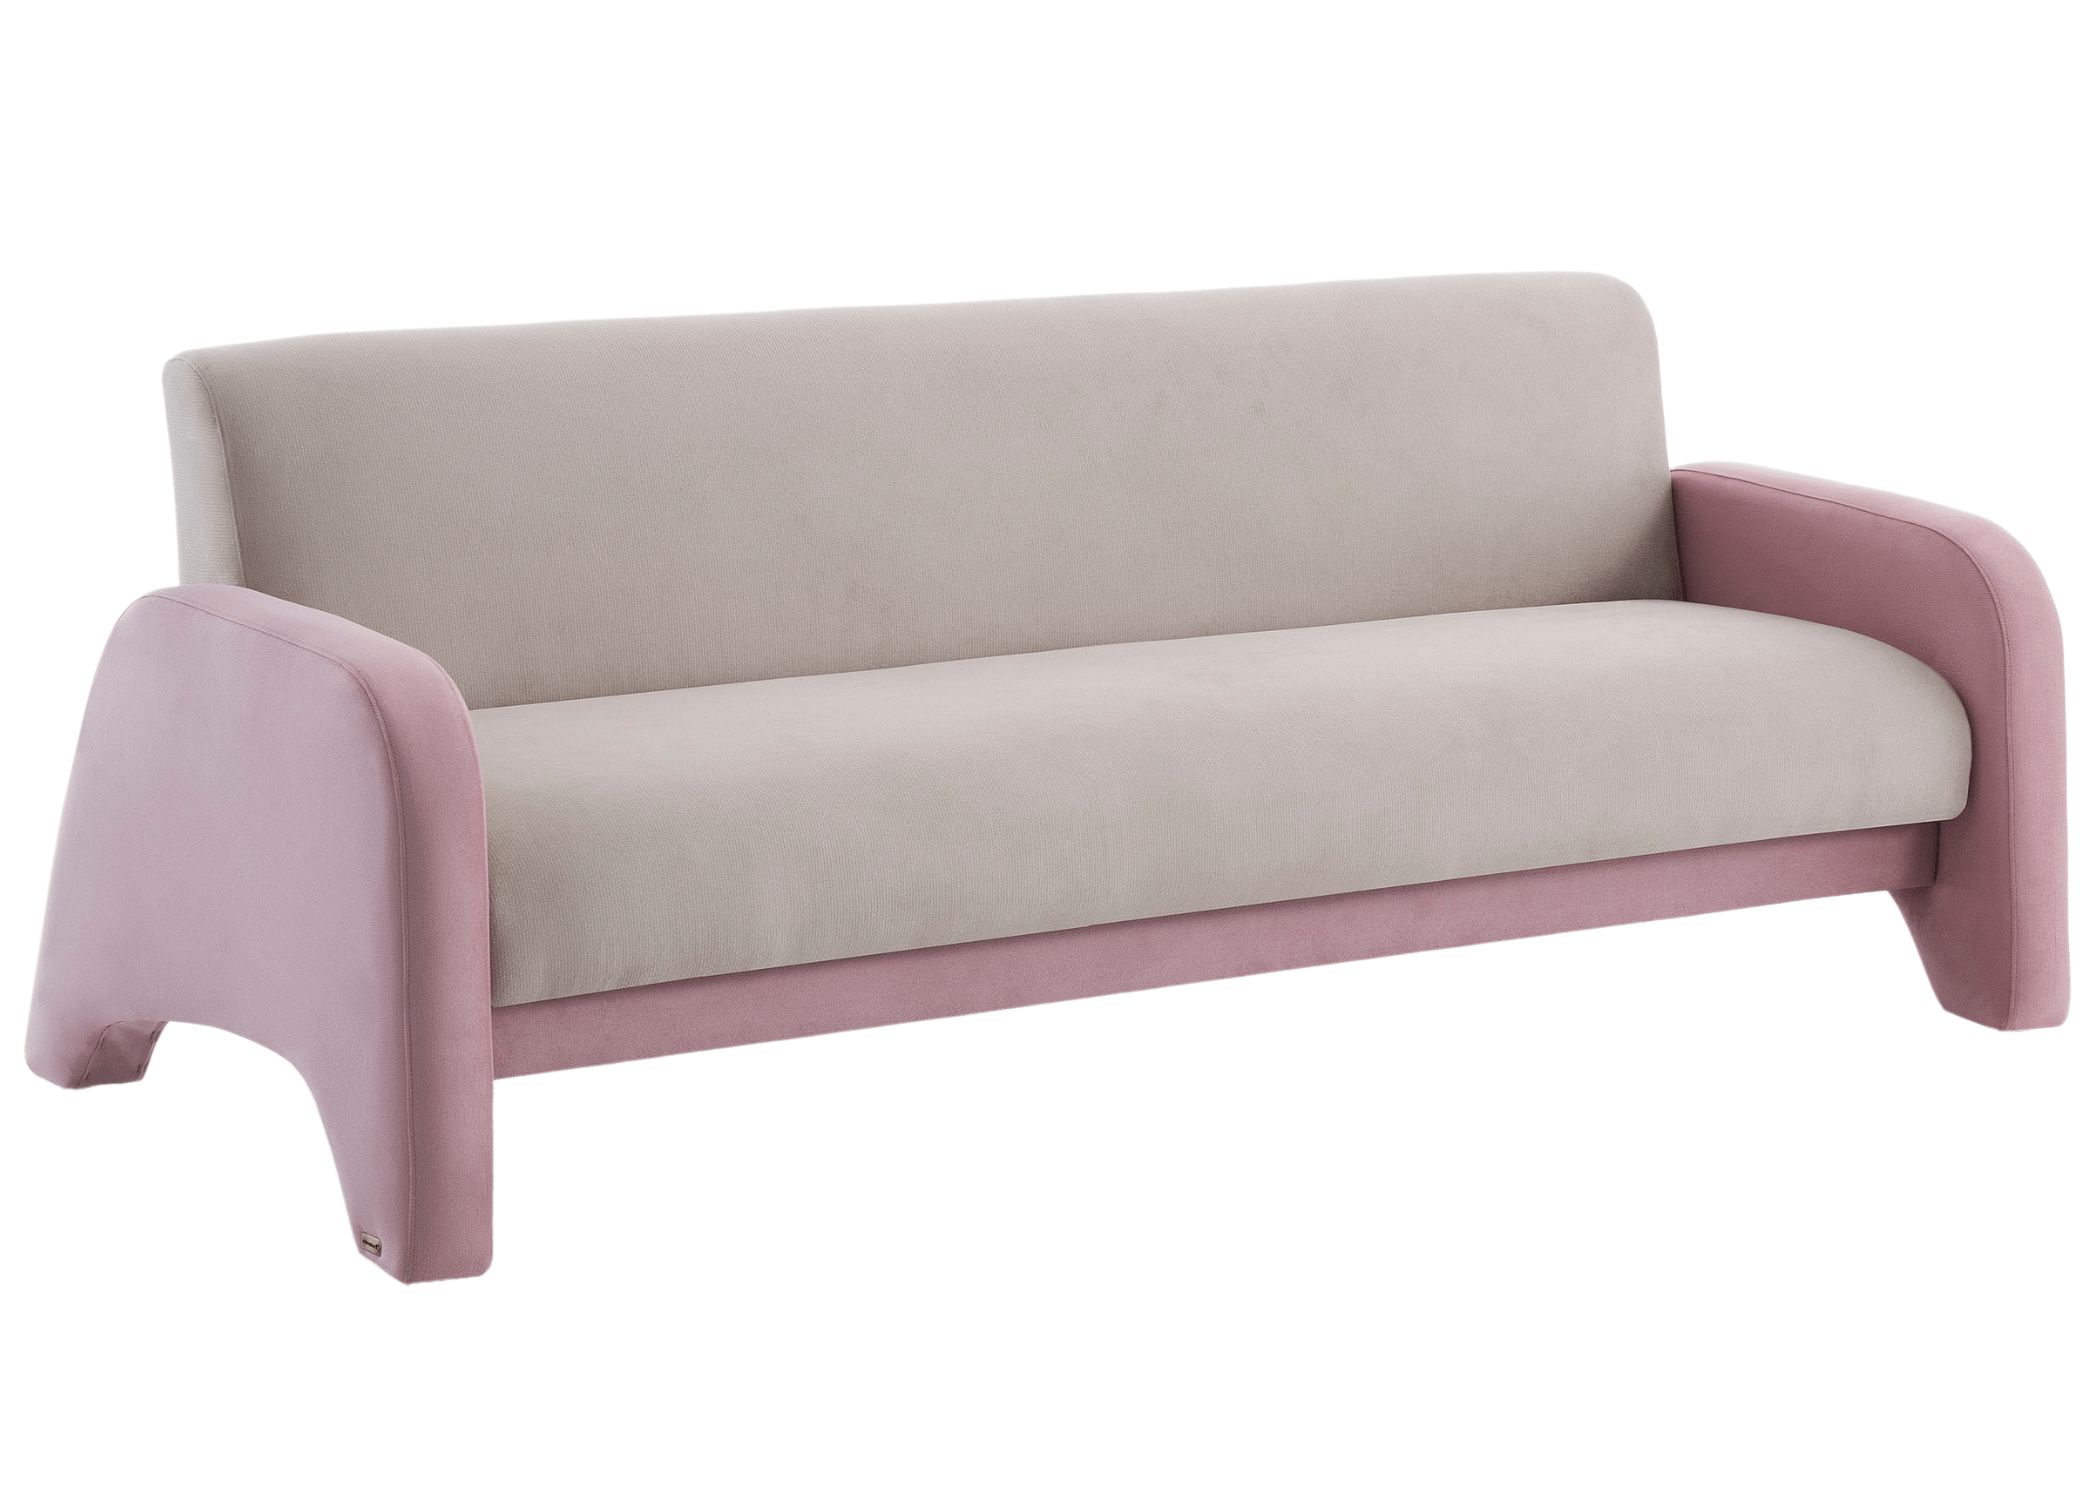 Conforto garantido com o sofá cama Luzia em qualquer configuração.